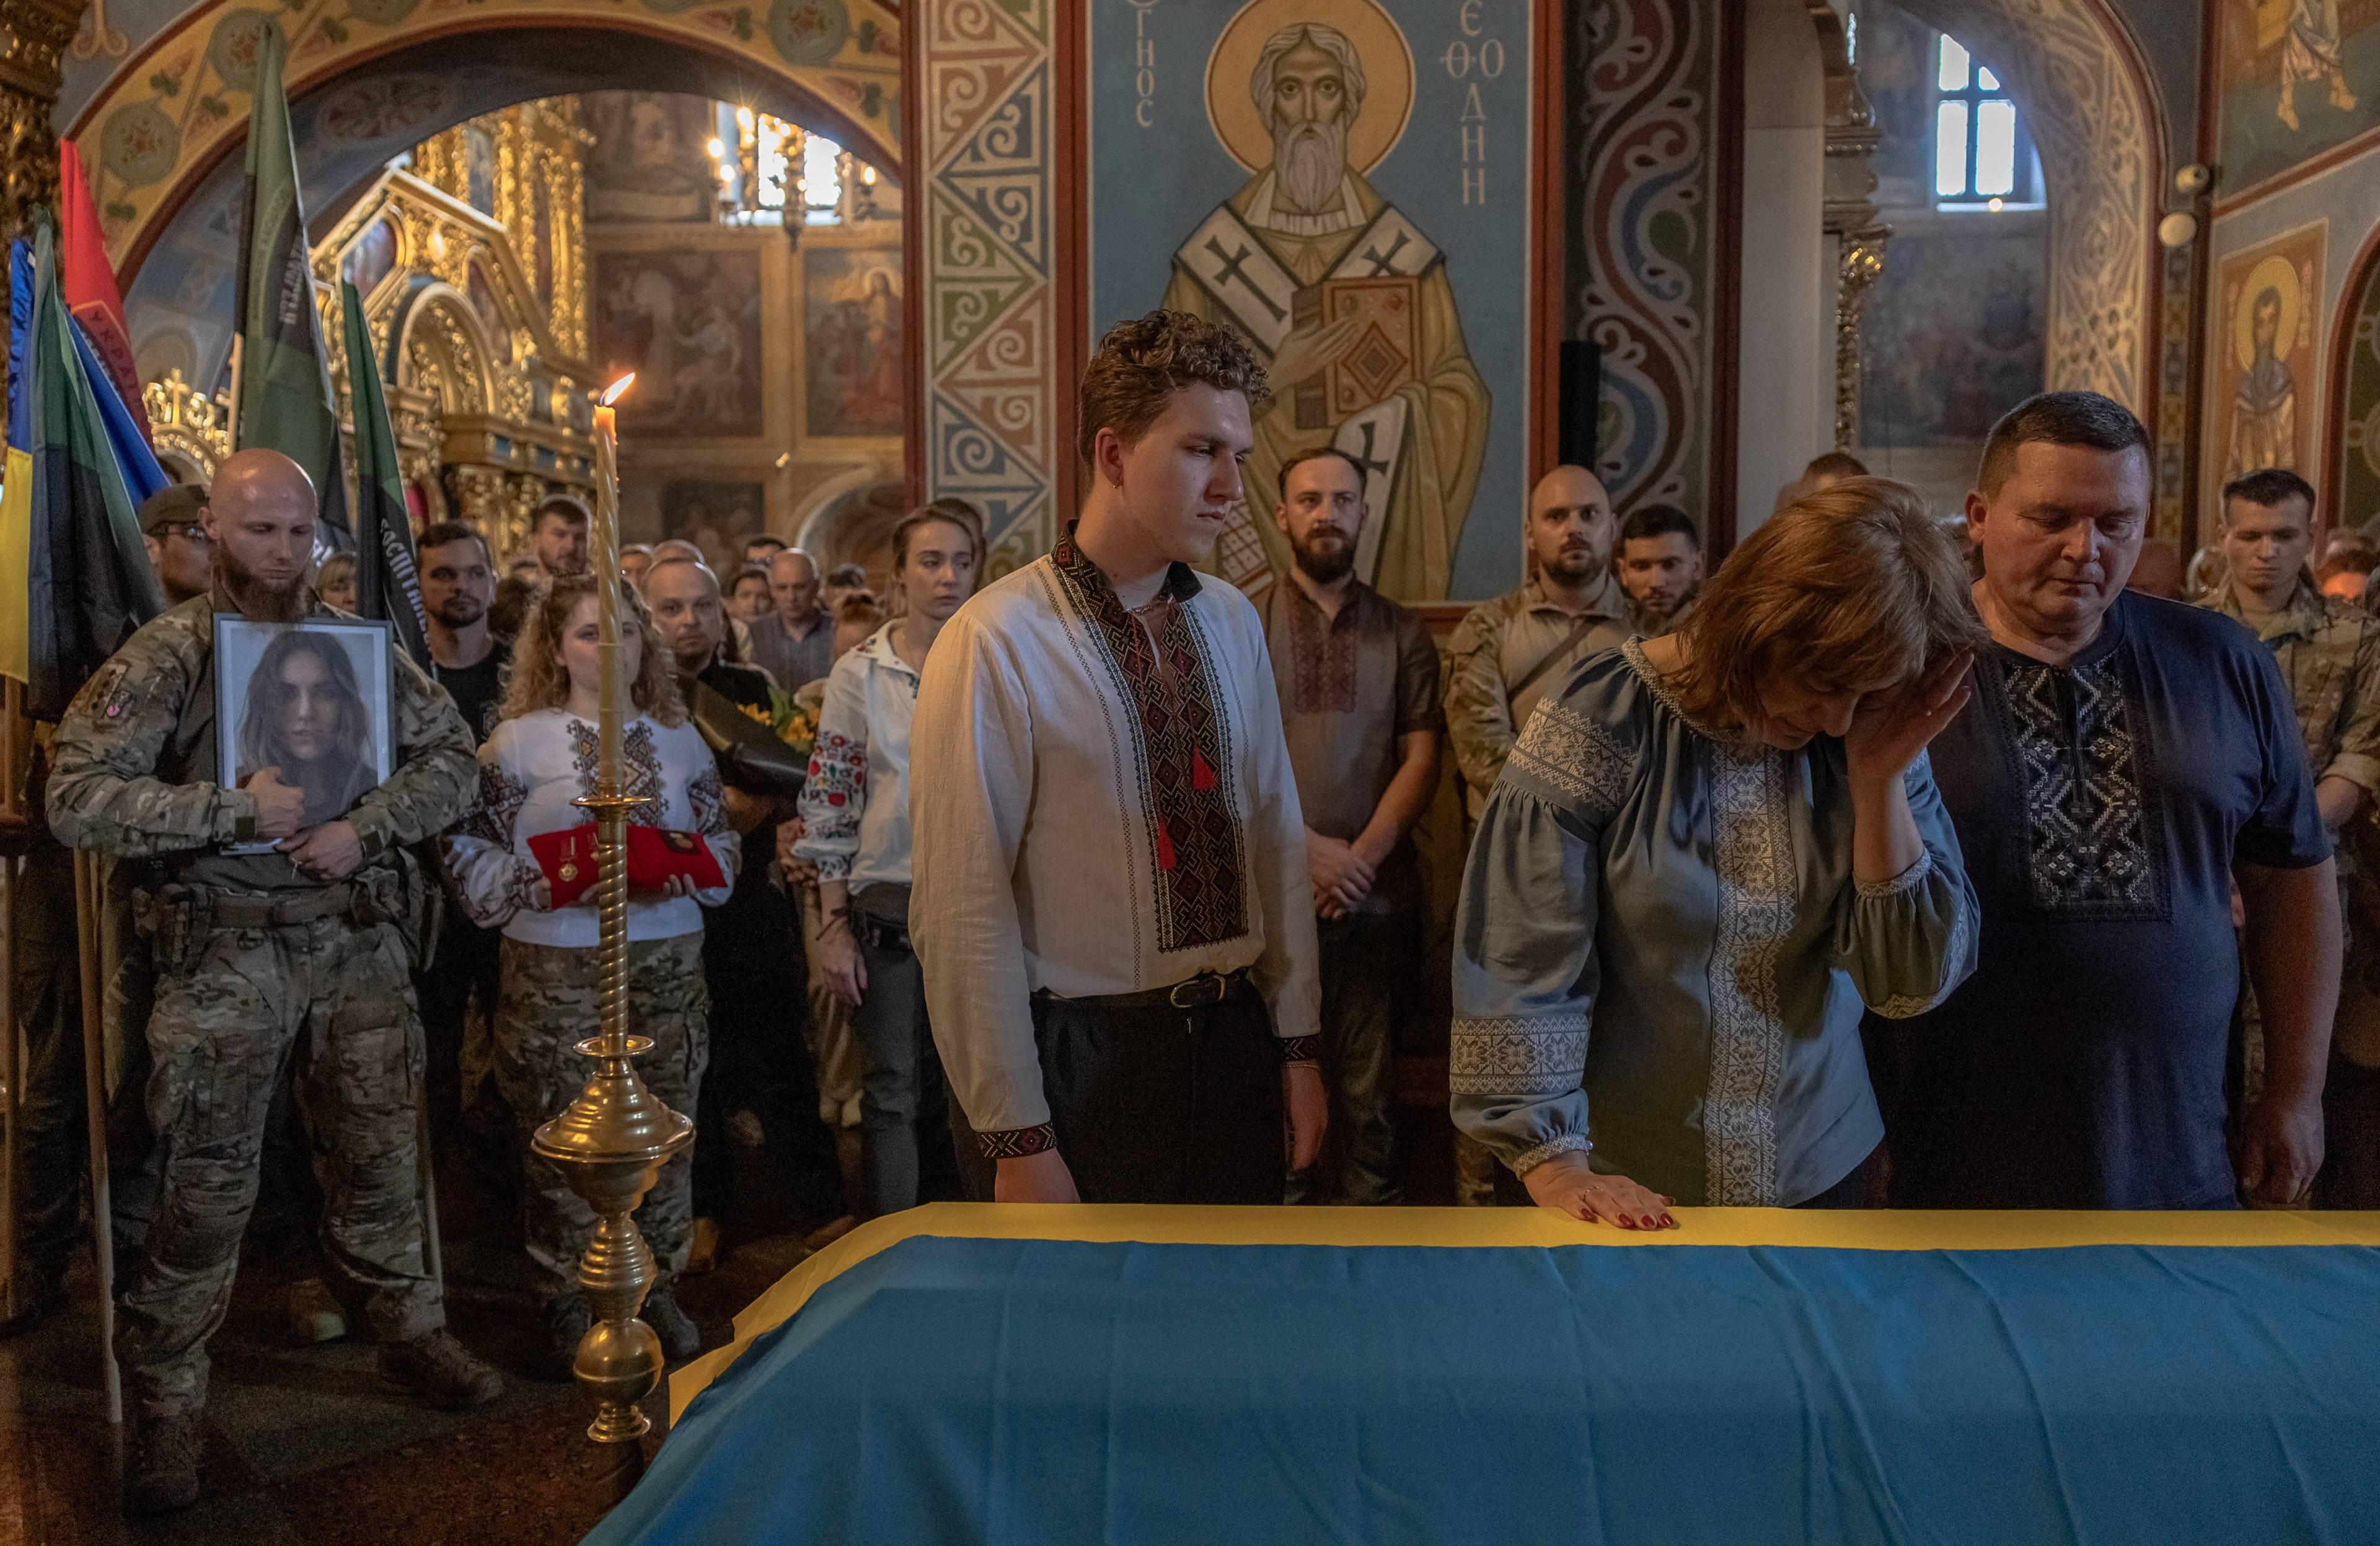 Na zdjęciu w cerkwi obok trumny przykrytej flagą żółto-niebieską stoi rodzina Iryny Cybuch: brat Jurij z matką oraz ojcem. Są w koszulach wyszywanych. W tle są inni ludzie